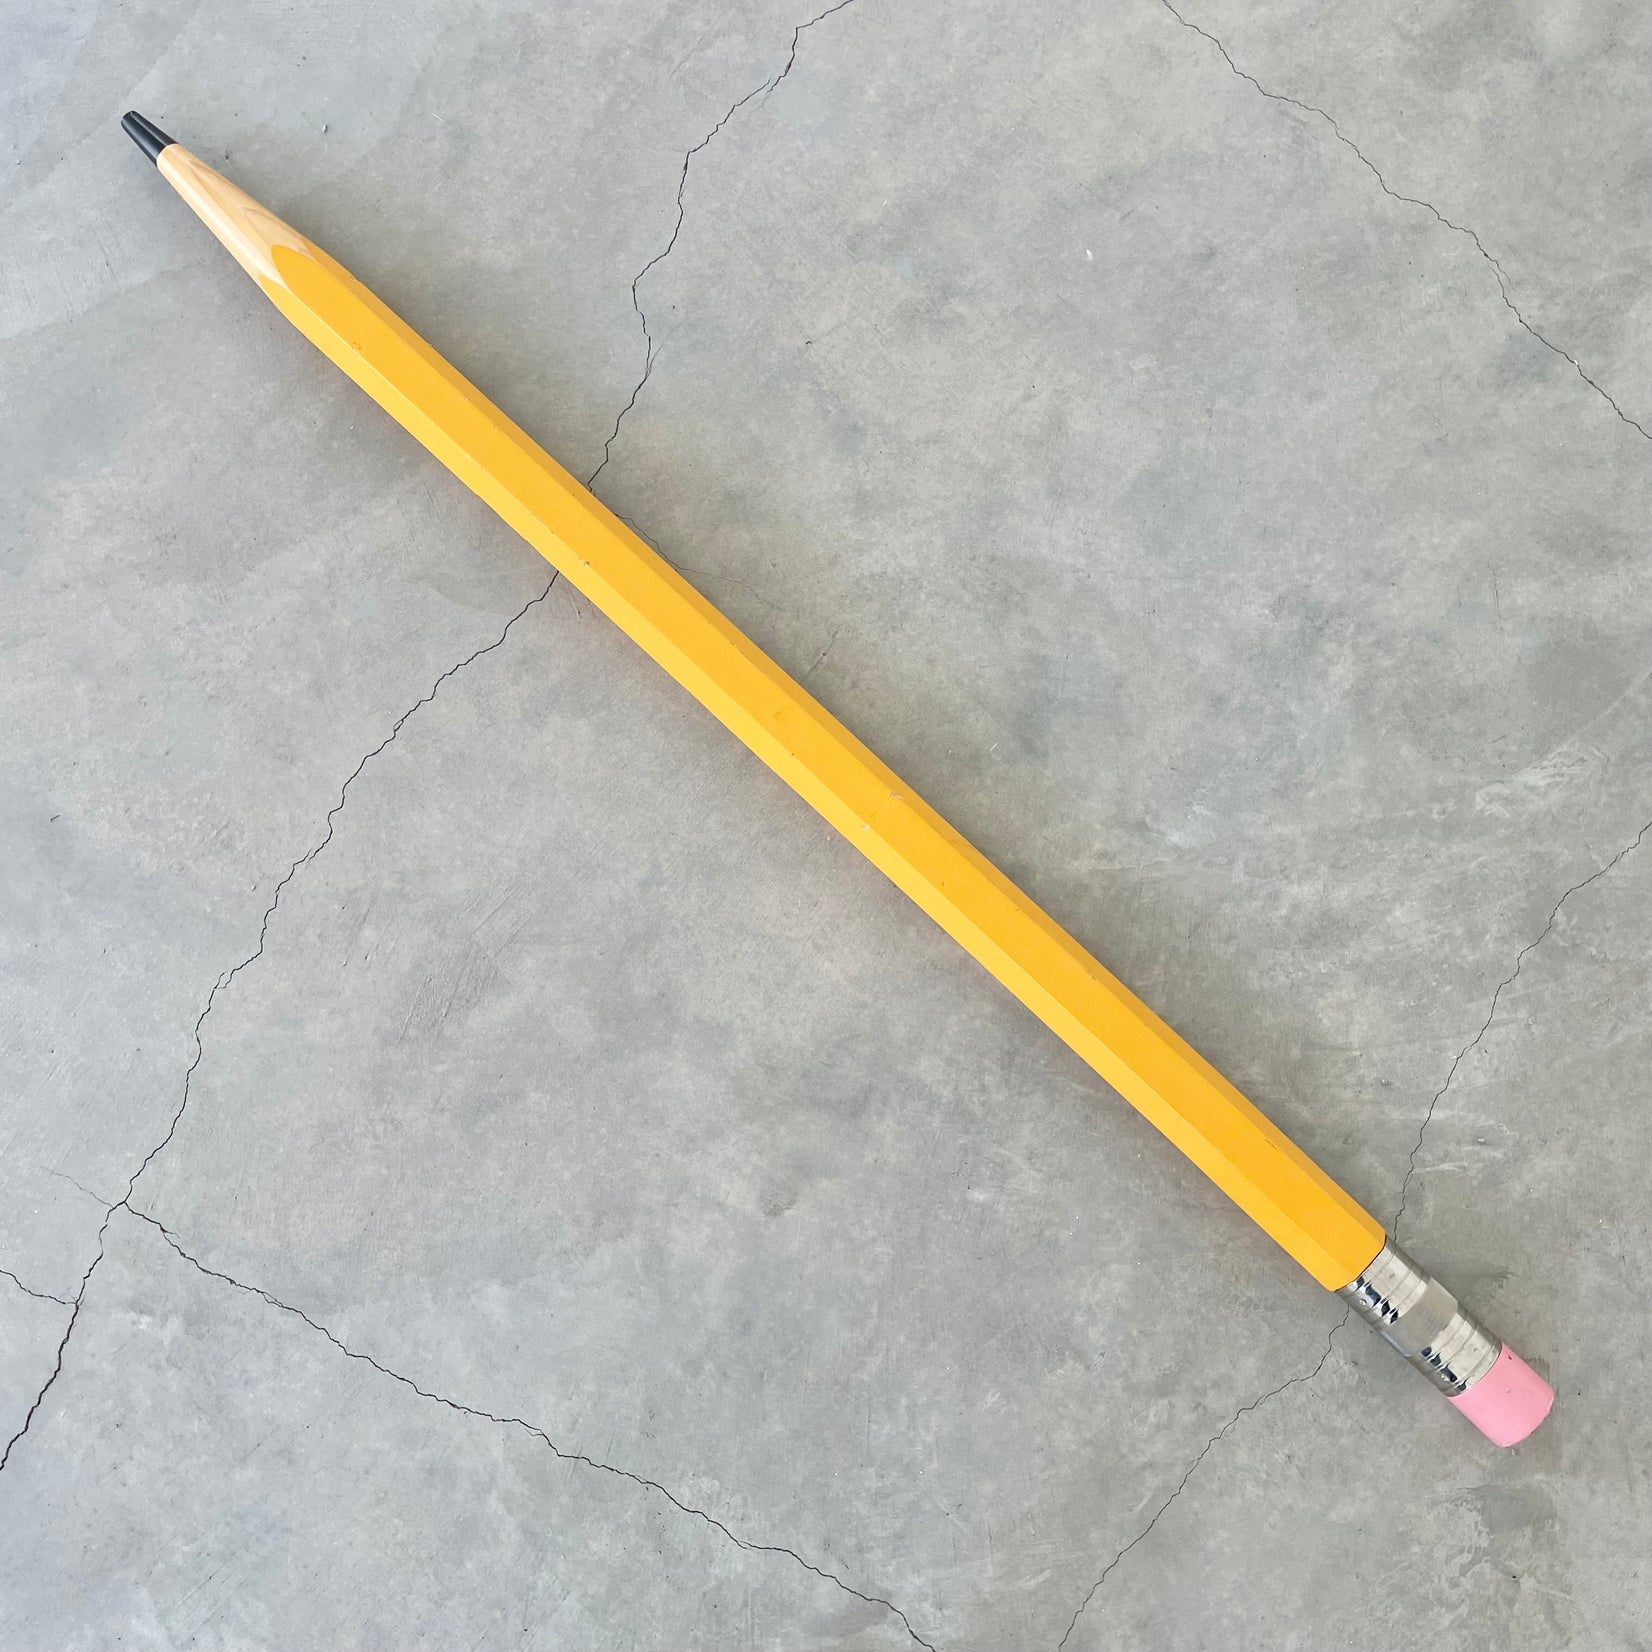 5 Foot Tall Pop Art Wood Pencil